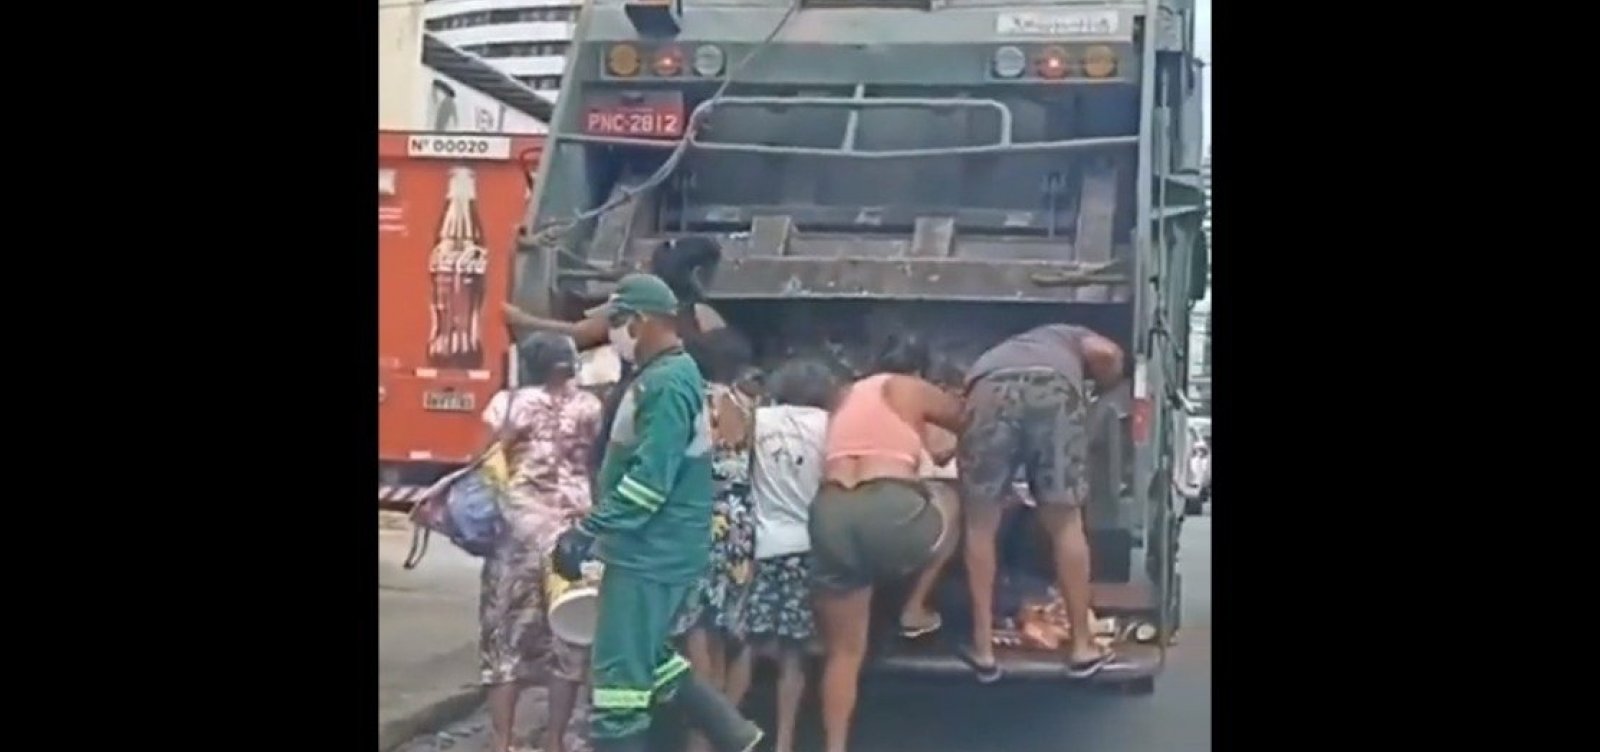 Vídeo mostra moradores buscando comida em caminhão de lixo em Fortaleza